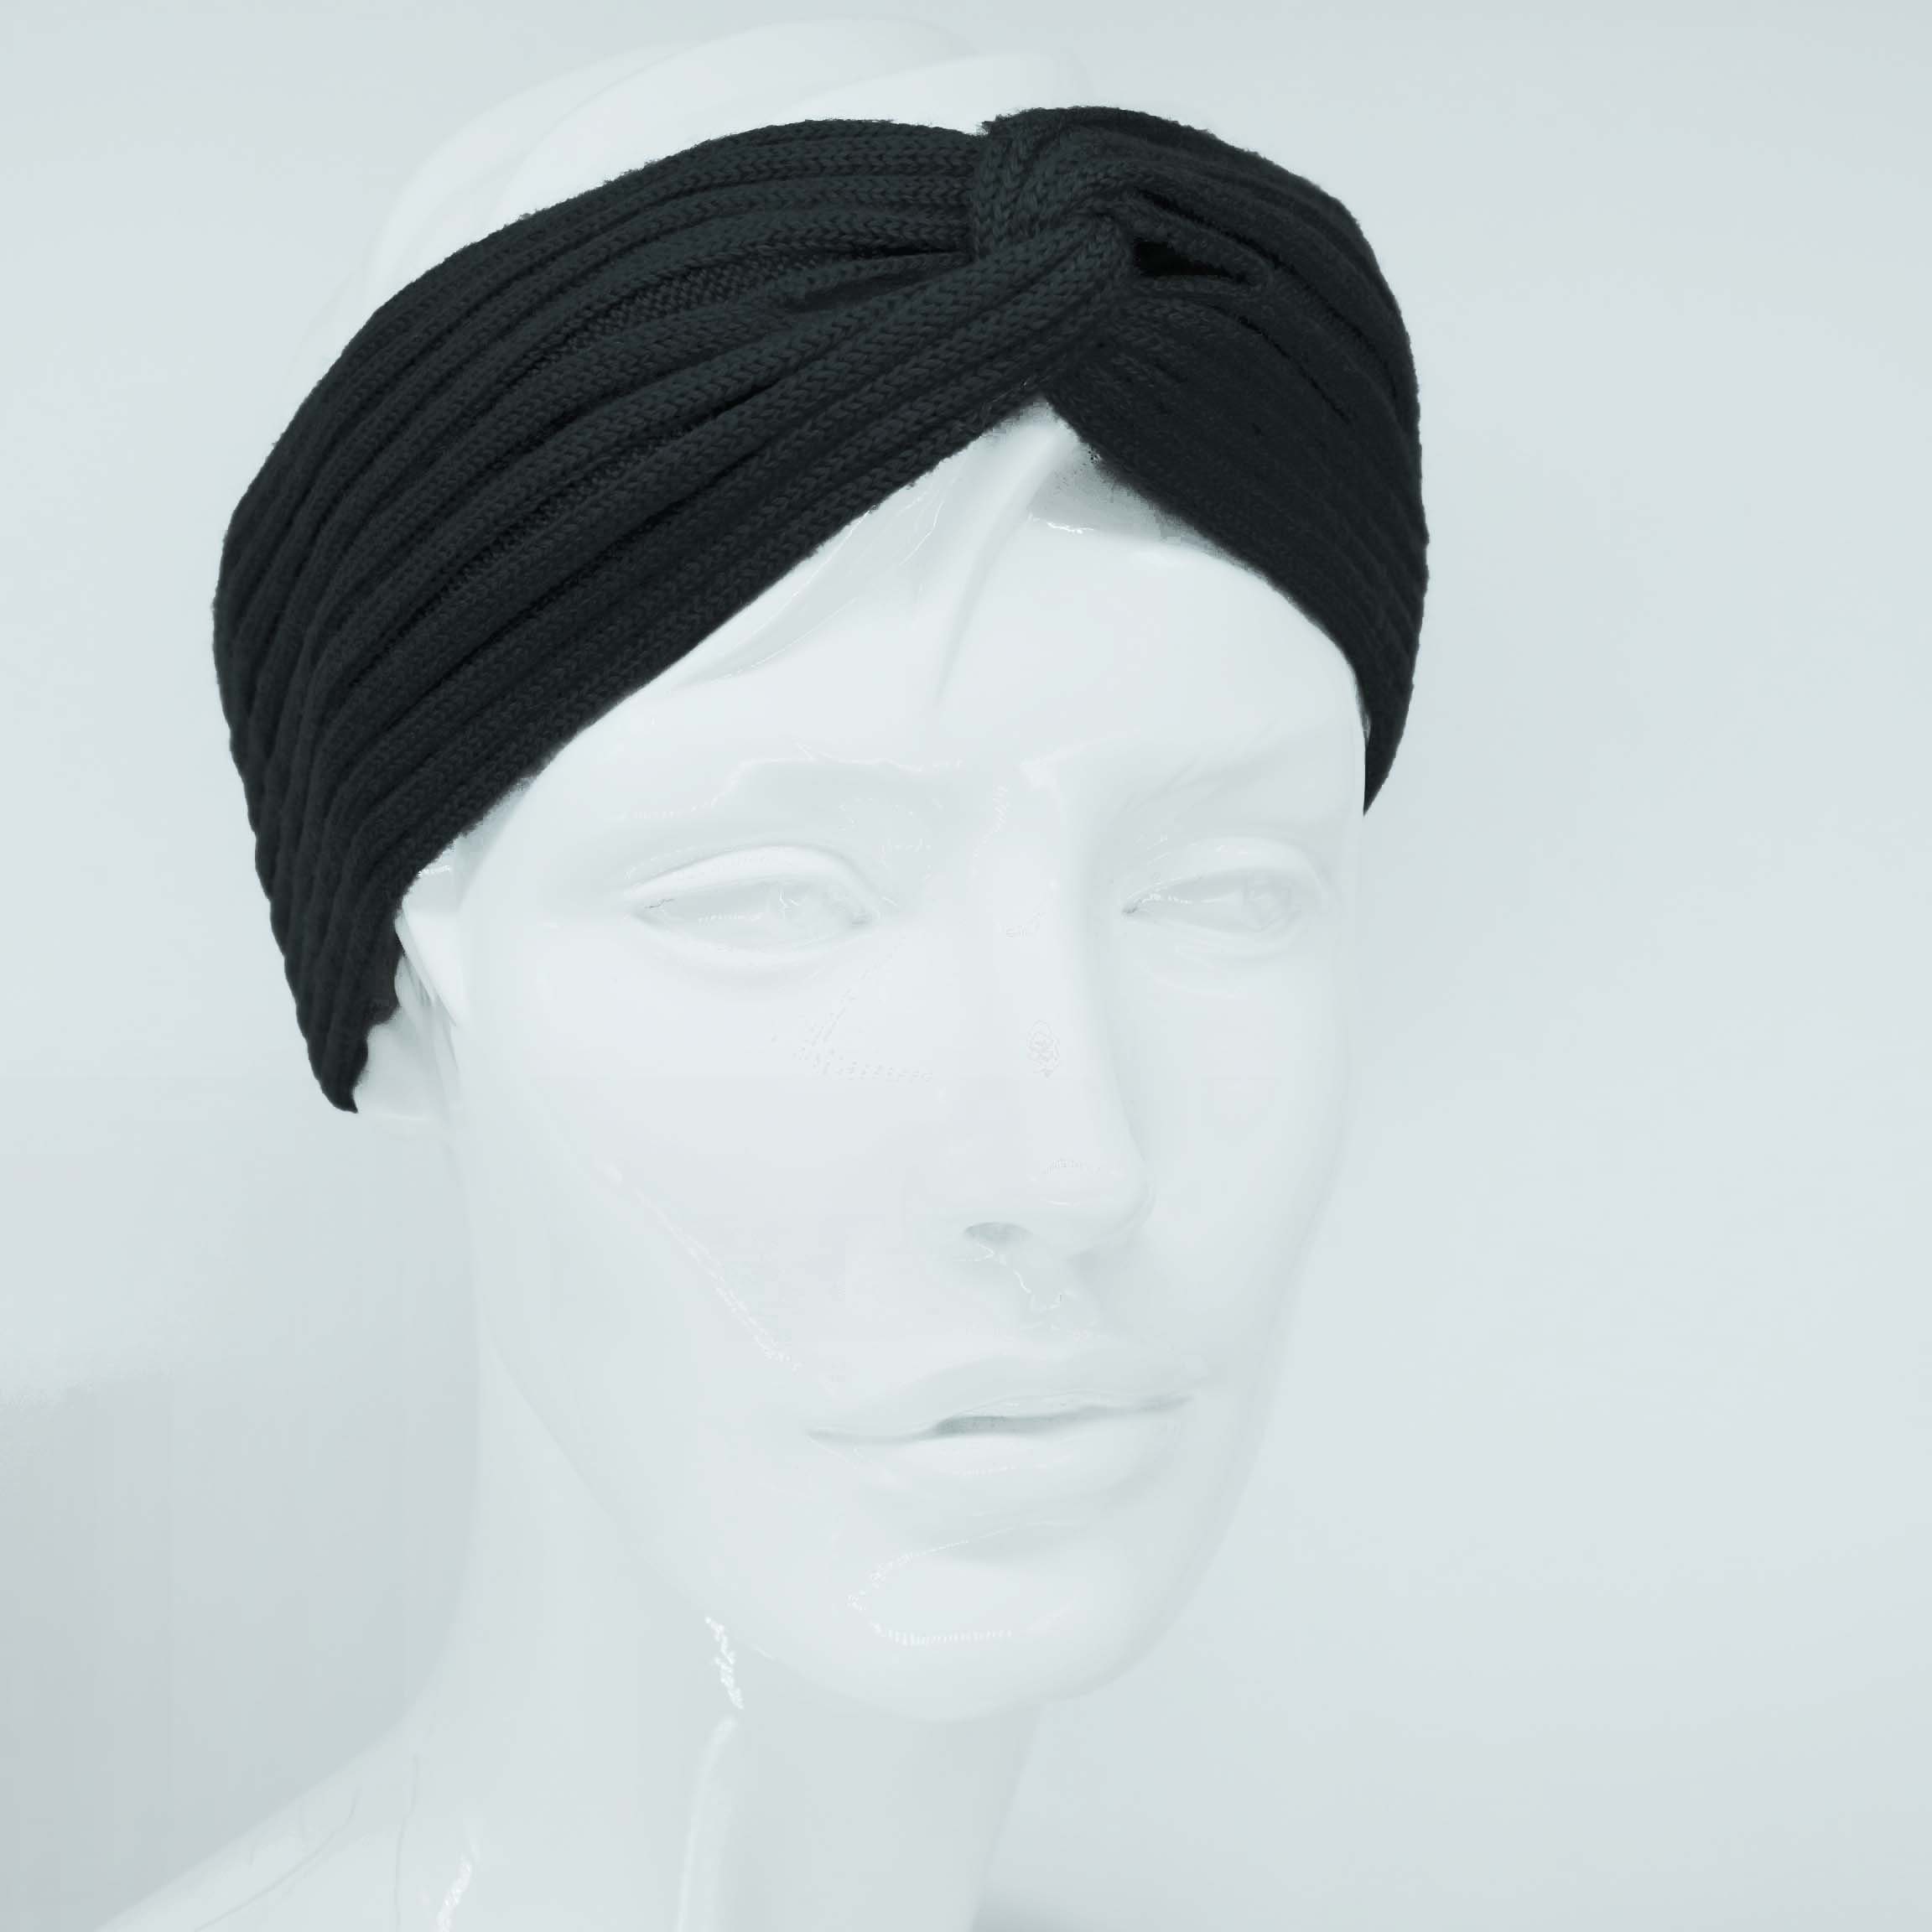 BEAZZ Stirnband Stirnband Ohrenwärmer Damen Winter 100% WOLLE Merino Feinstrick, warm und weich schwarz